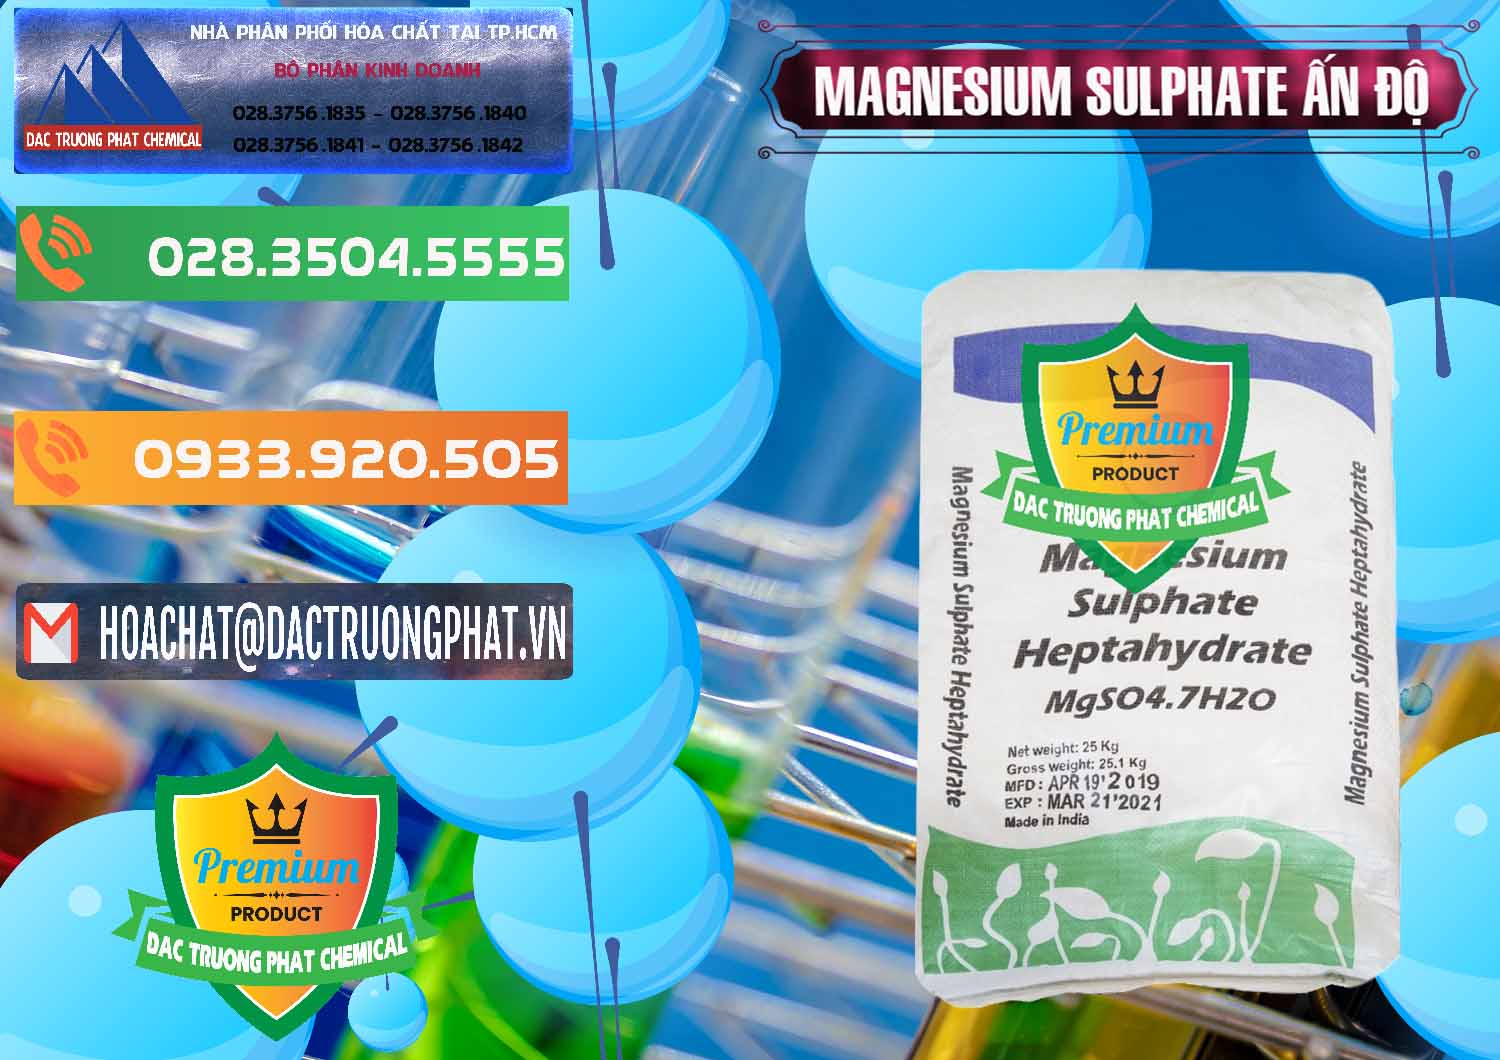 Công ty chuyên cung cấp ( bán ) MGSO4.7H2O – Magnesium Sulphate Heptahydrate Ấn Độ India - 0362 - Nhà cung cấp - bán hóa chất tại TP.HCM - hoachatxulynuoc.com.vn